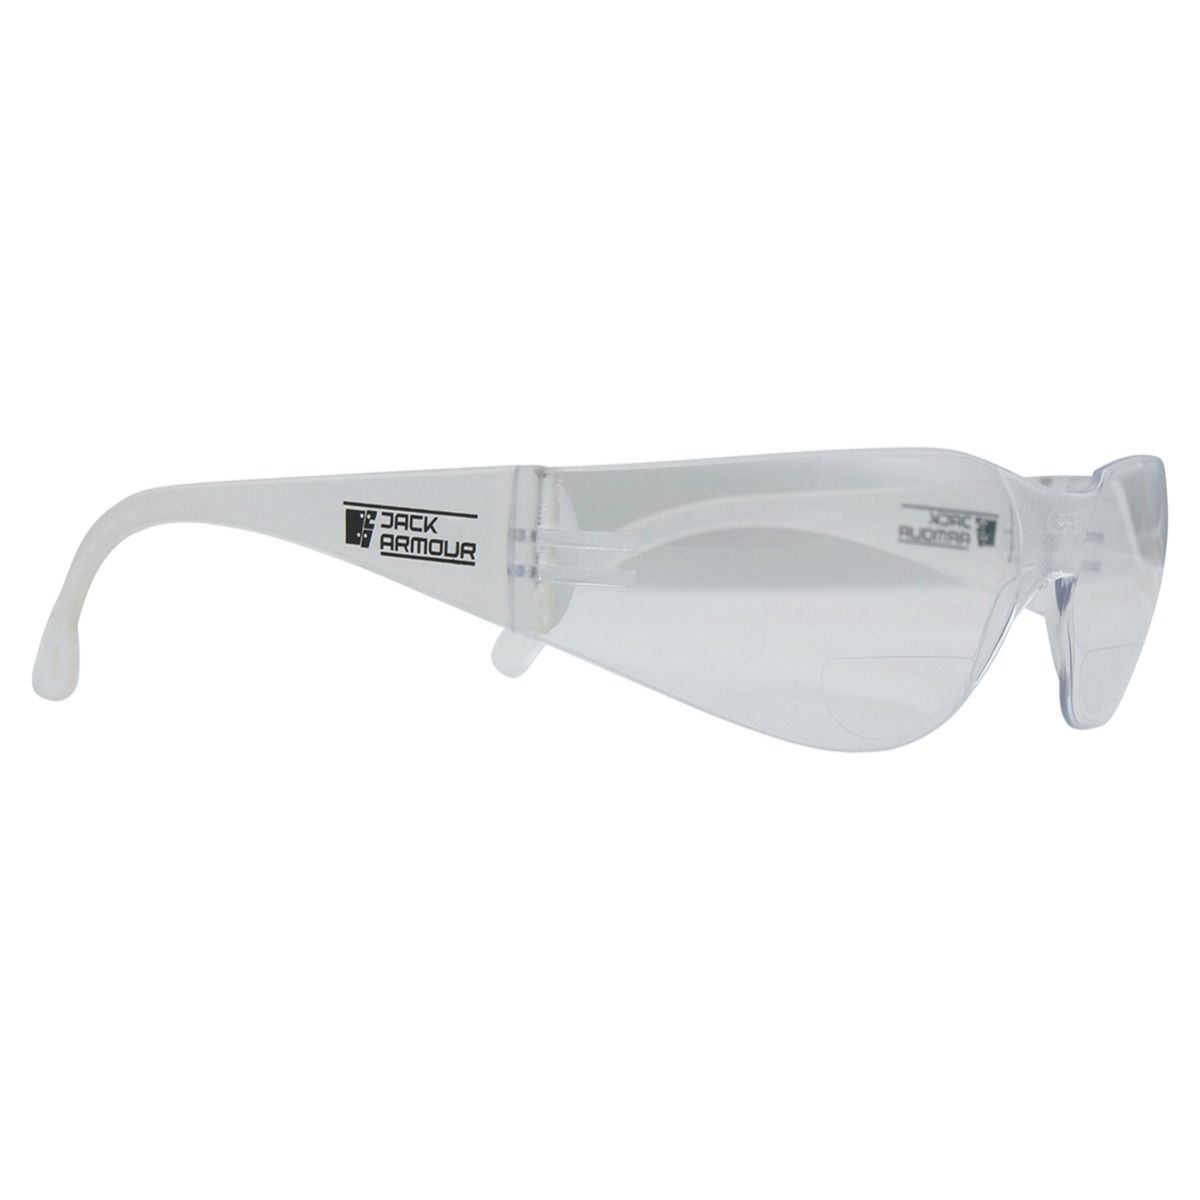 Black Jack Magnum Bifocal Glasses Clear +2.50